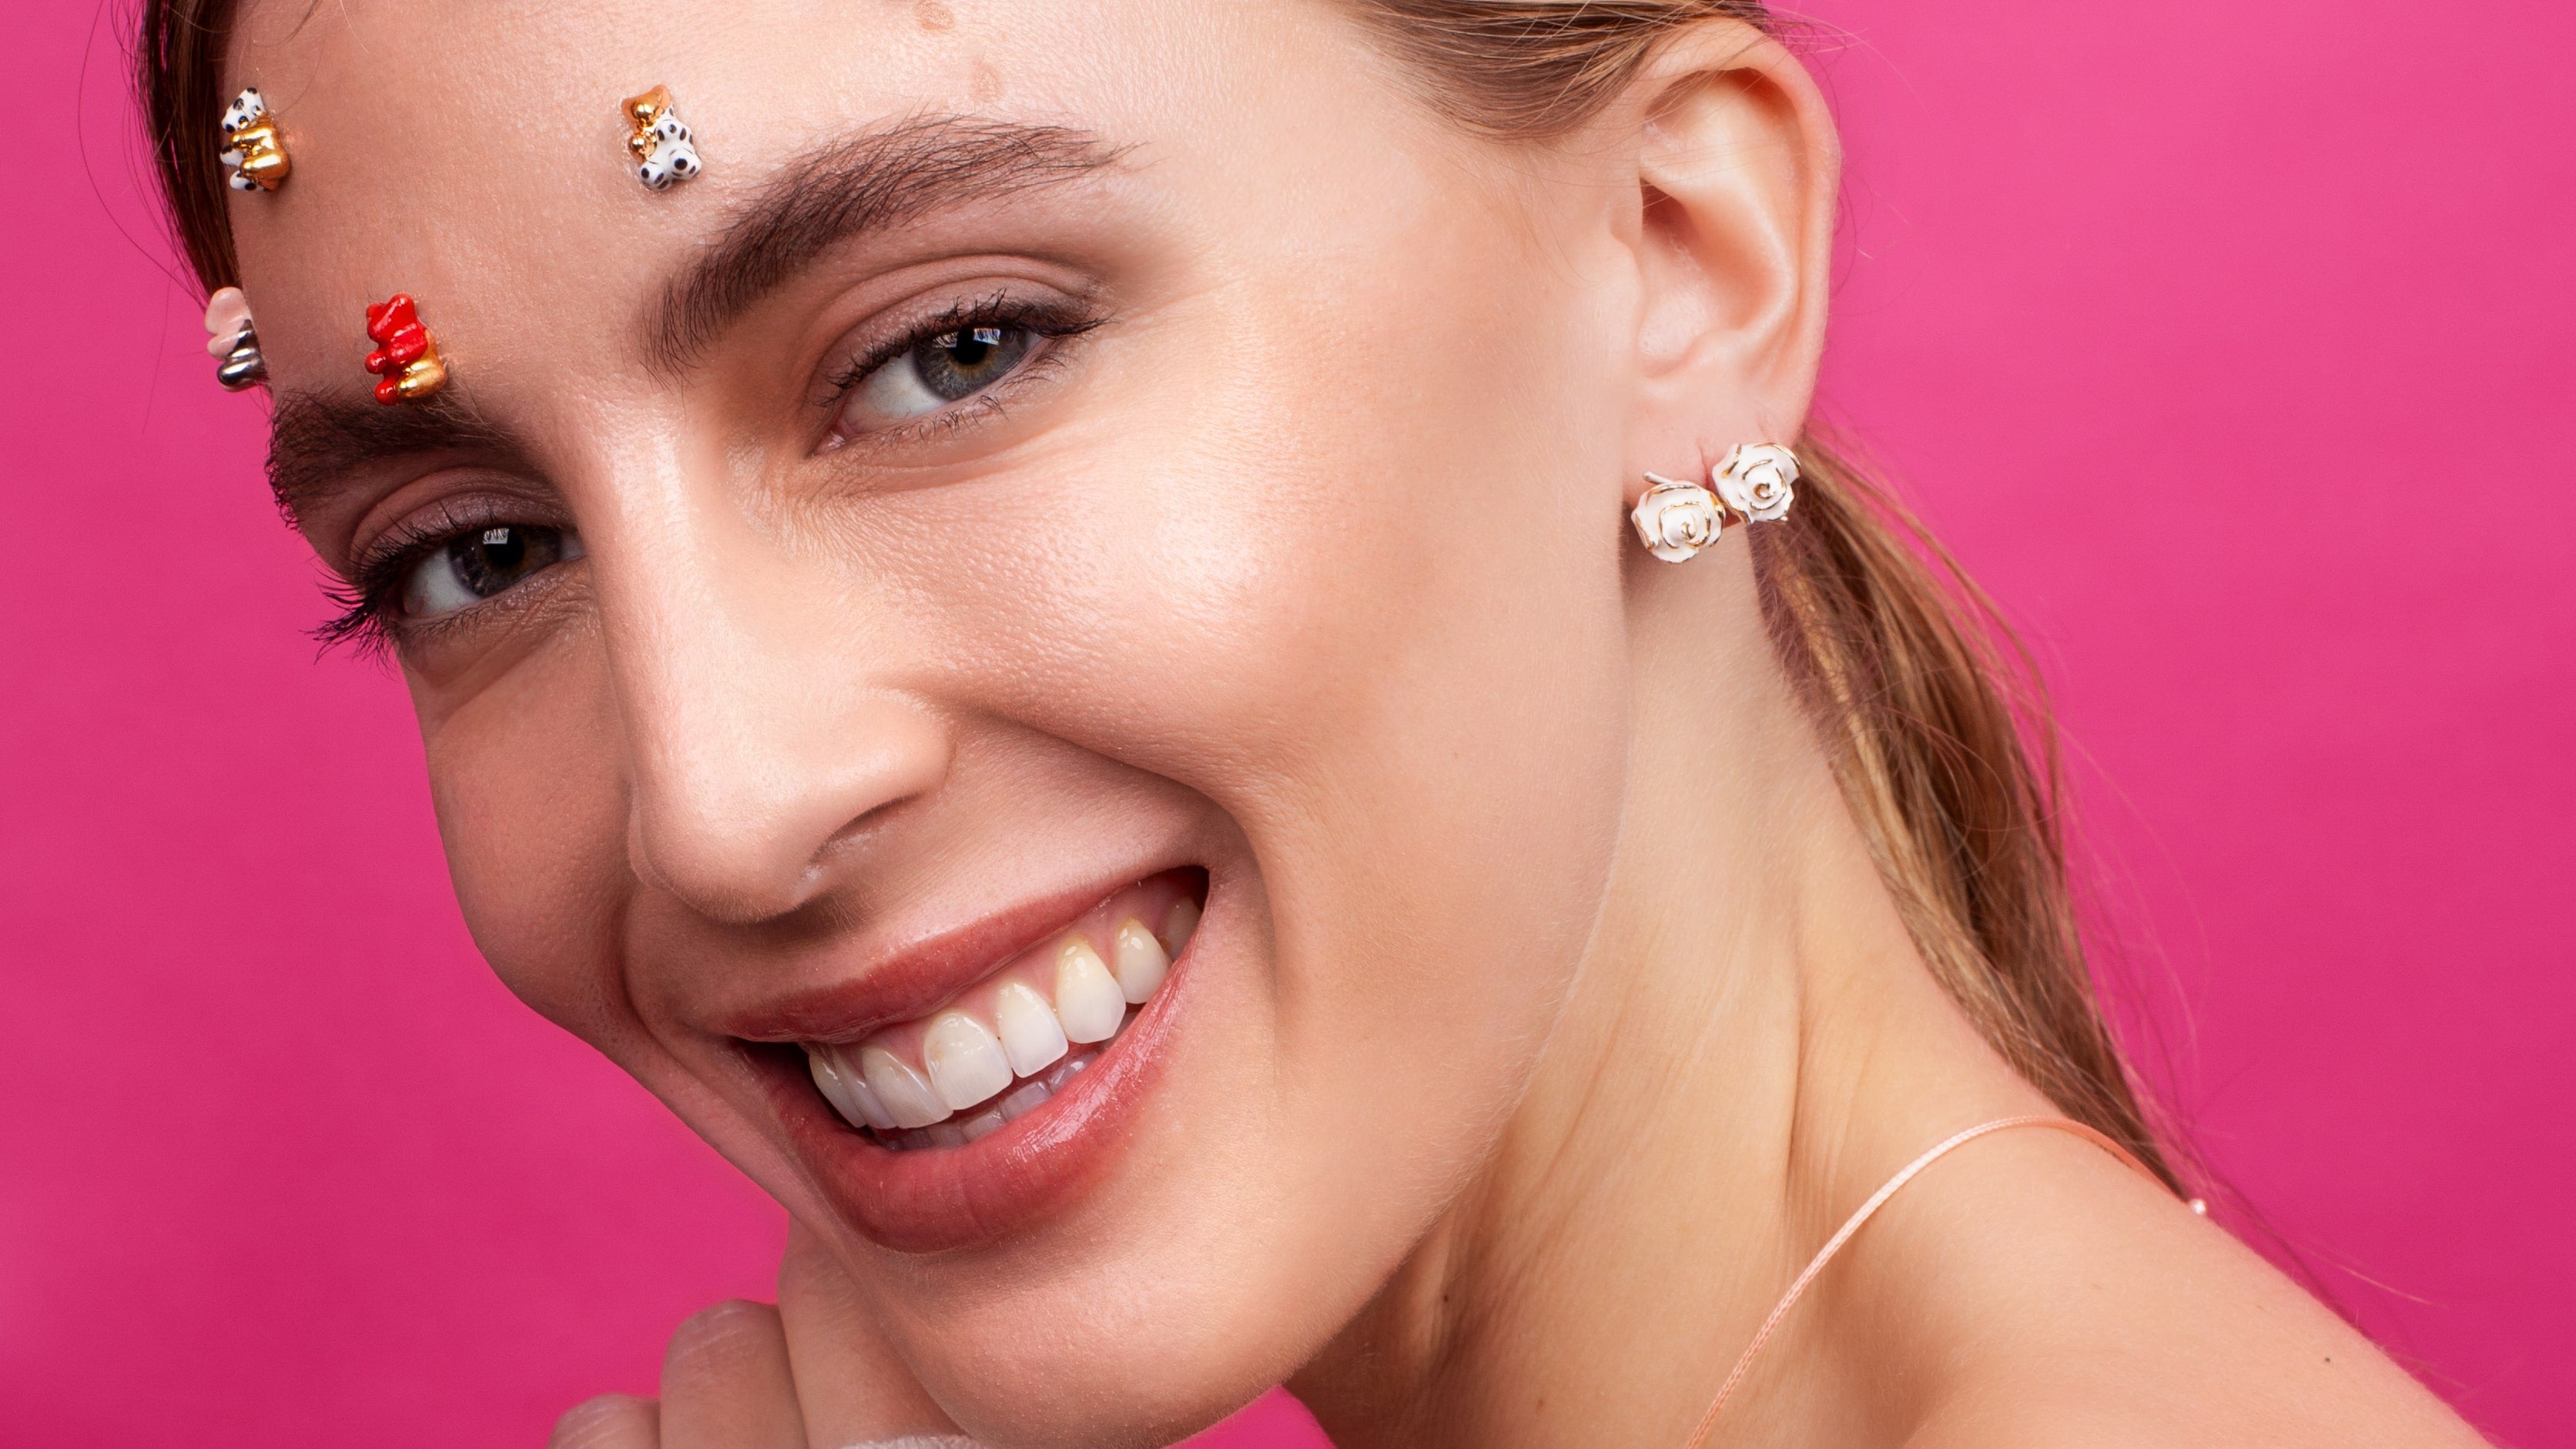 Tara wearing CJ314 rose earrings and gummy bear stud earrings